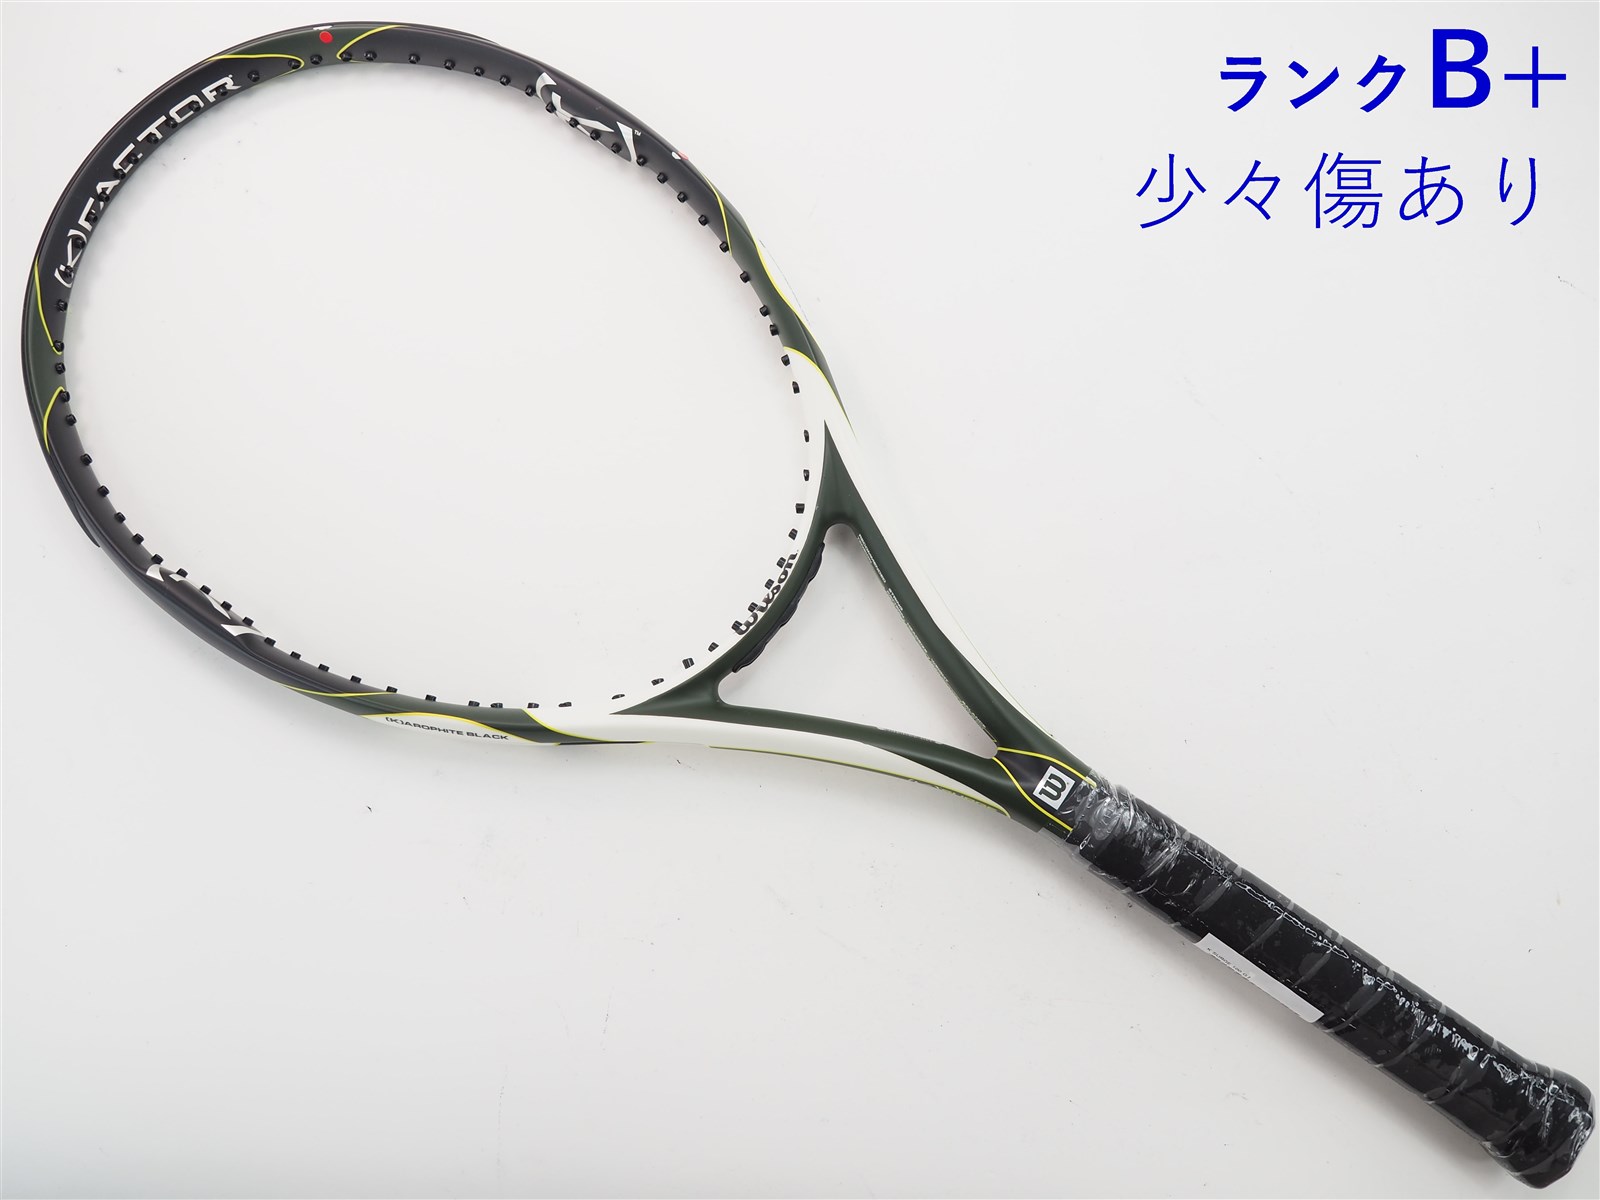 テニスラケット ウィルソン K サージ 100 (G2)WILSON K SURGE 100